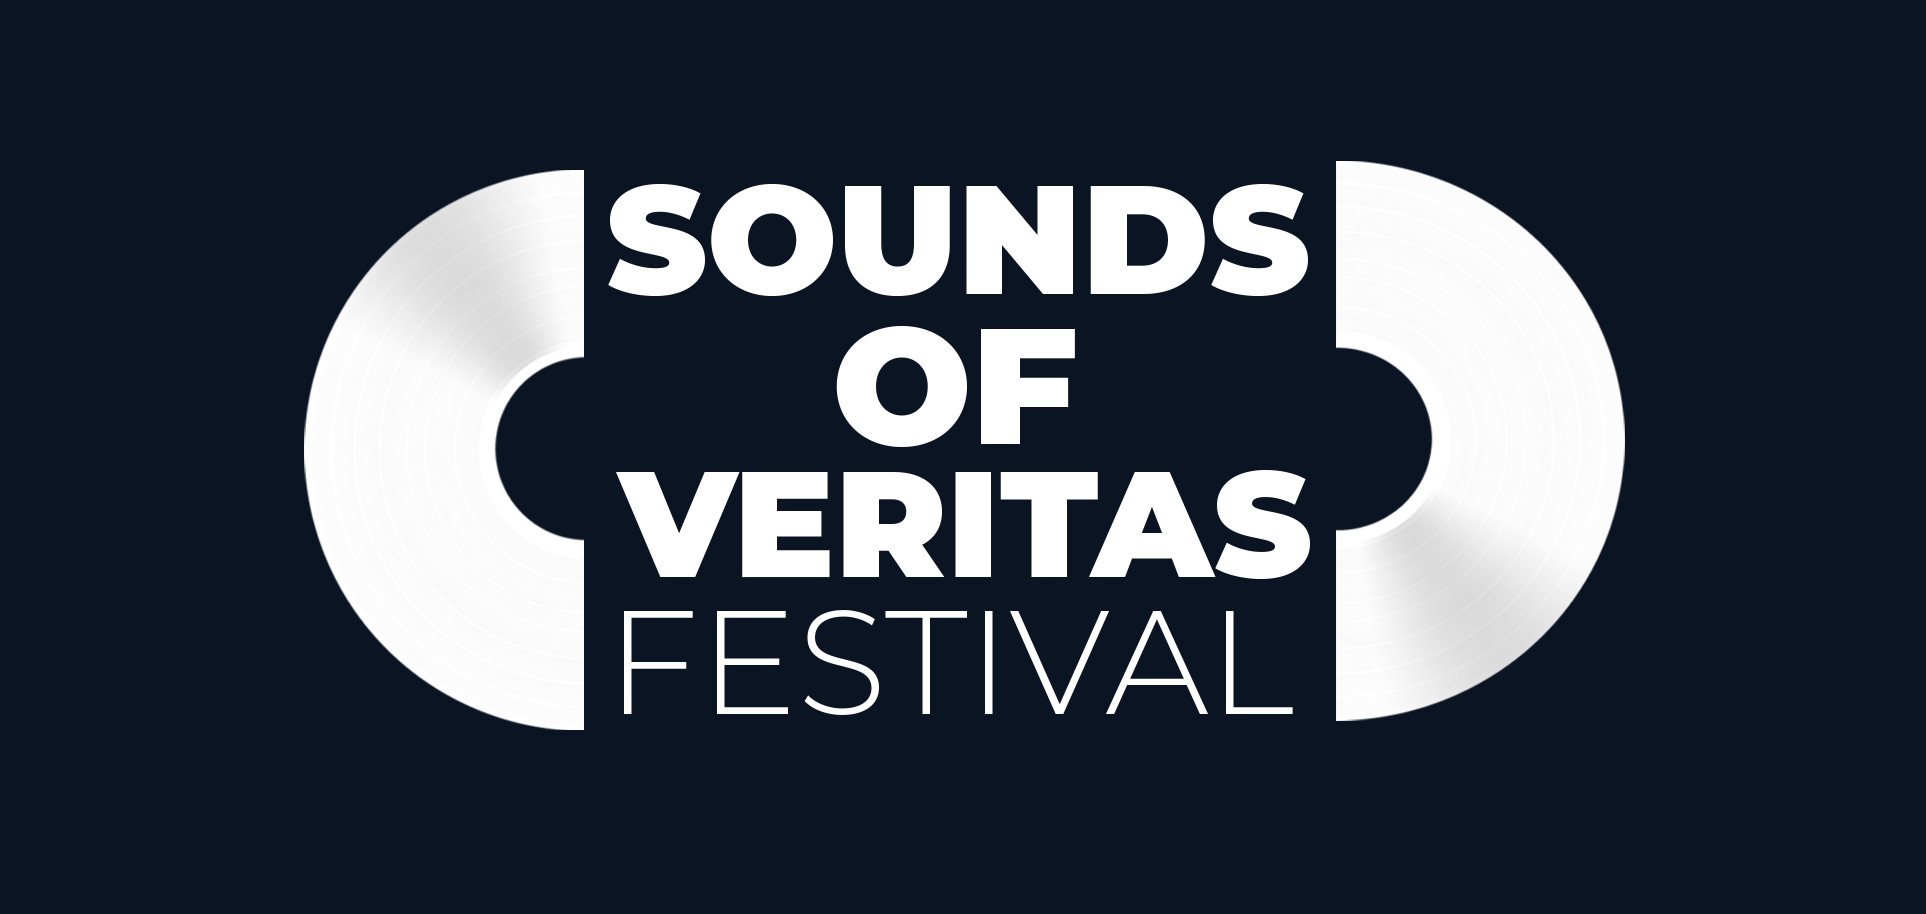 Festival Sounds Off Veritas